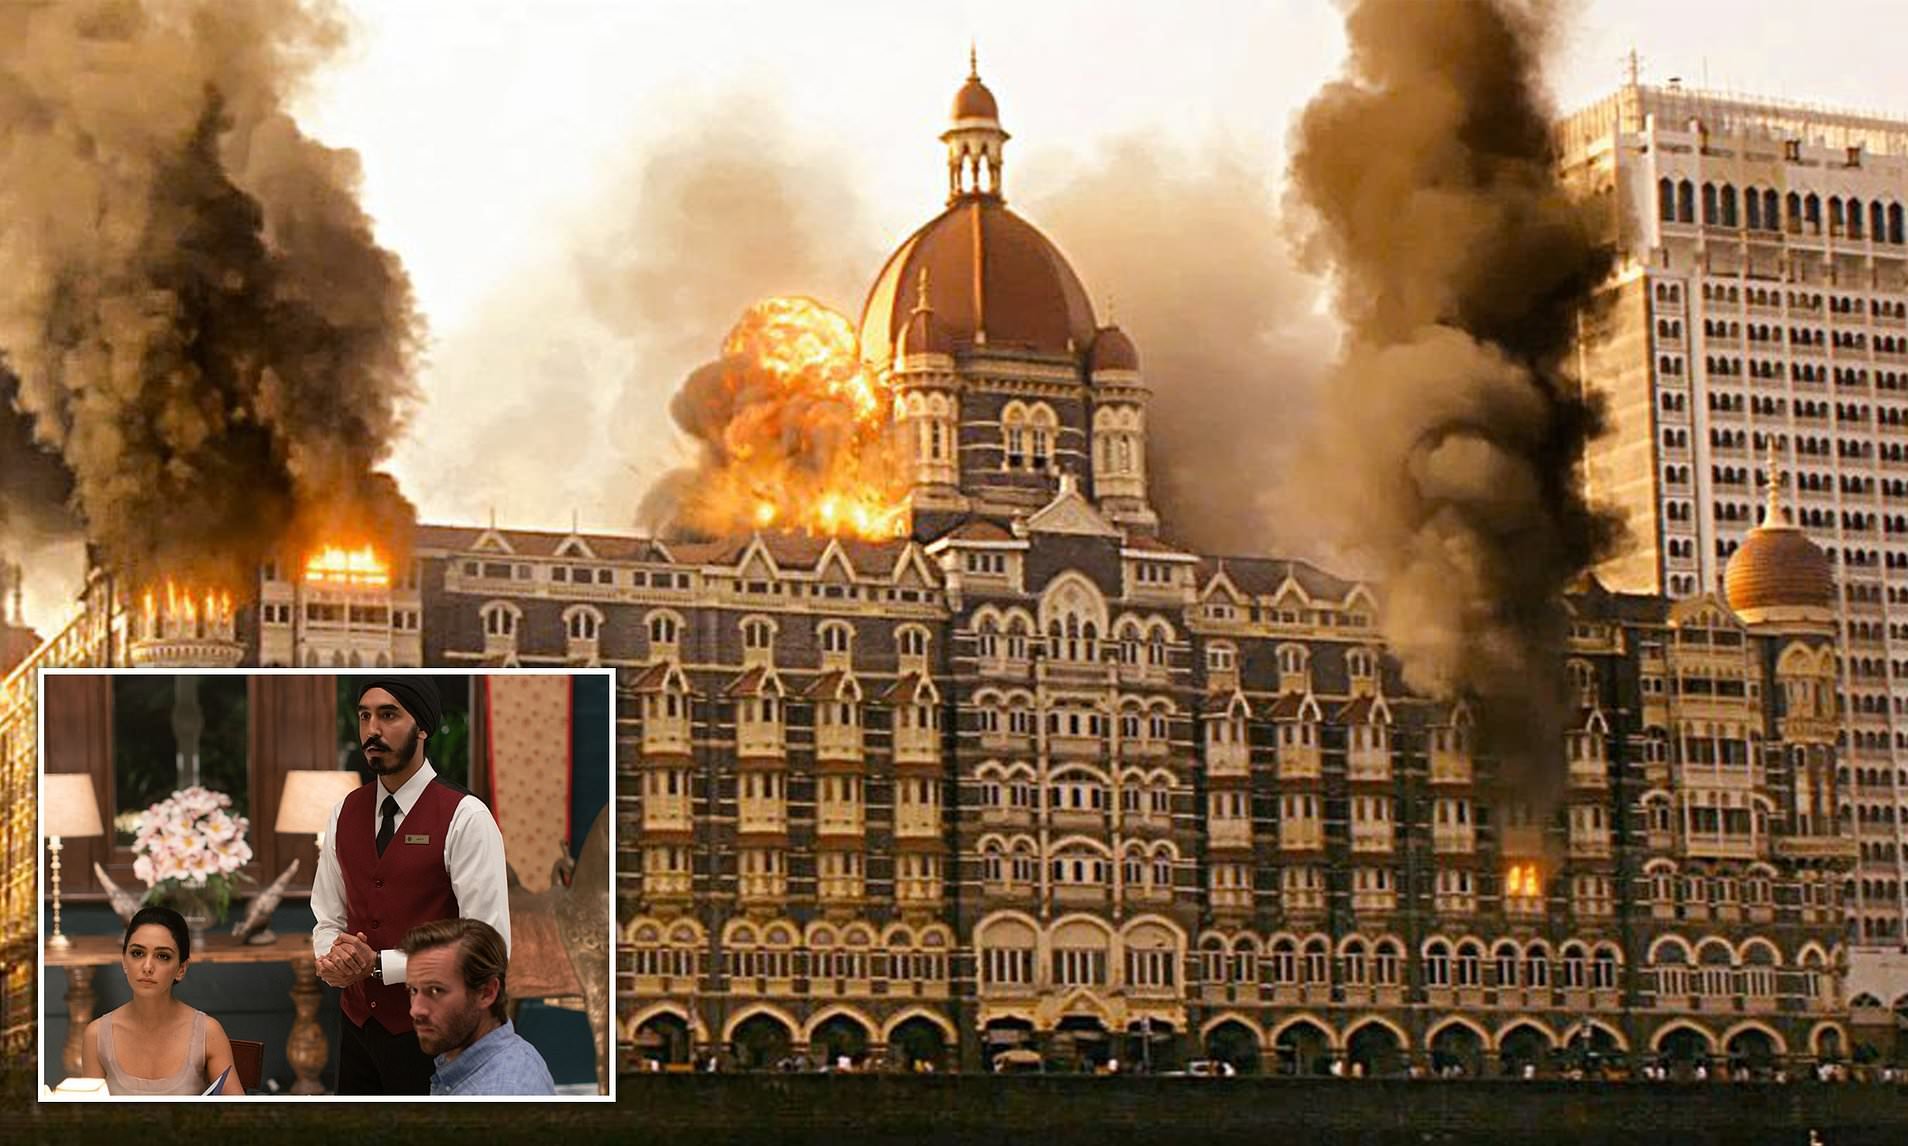 Отель в мумбаи реальные события. Отель Тадж Махал 2008 теракт. Мумбаи 2008 Тадж Махал теракт. Отель Тадж Махал в Мумбаи 2008. Отель Тадж Махал теракт.